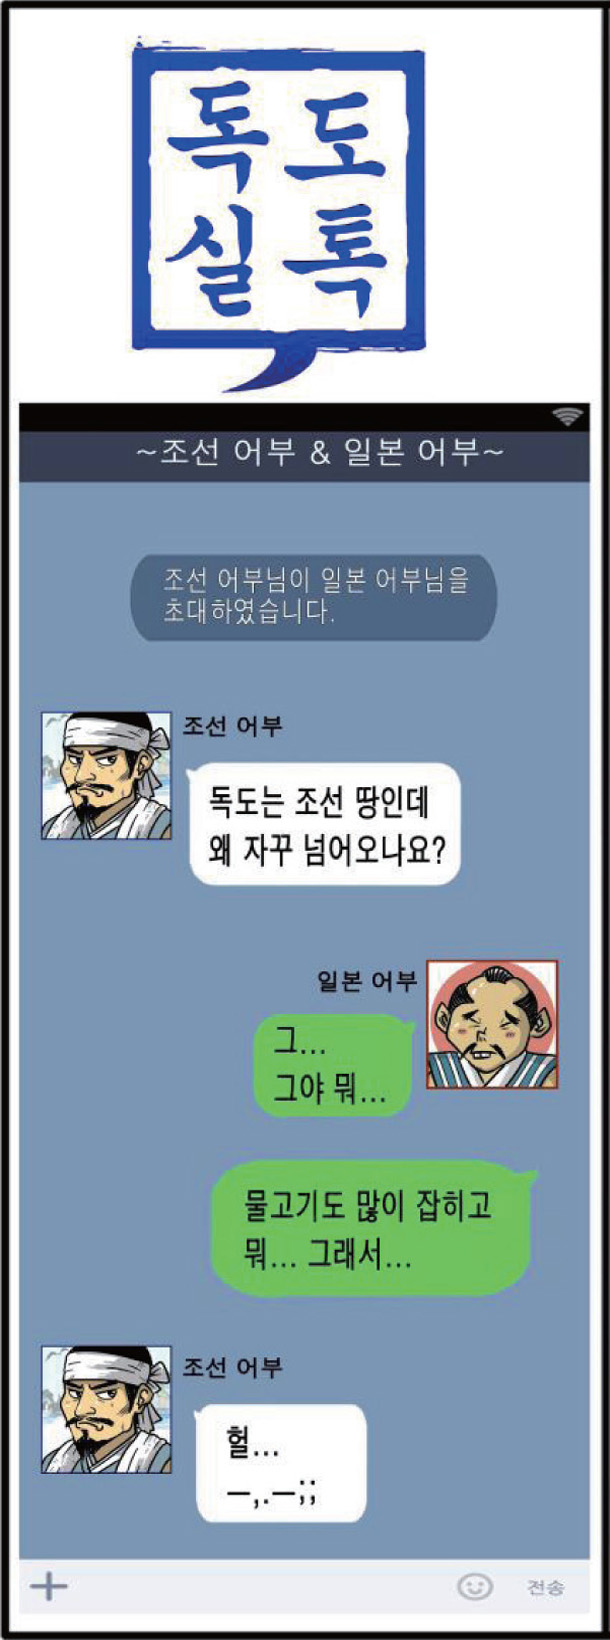 조선 어부 : 독도는 조선 땅인데 왜 자꾸 넘어오나요?